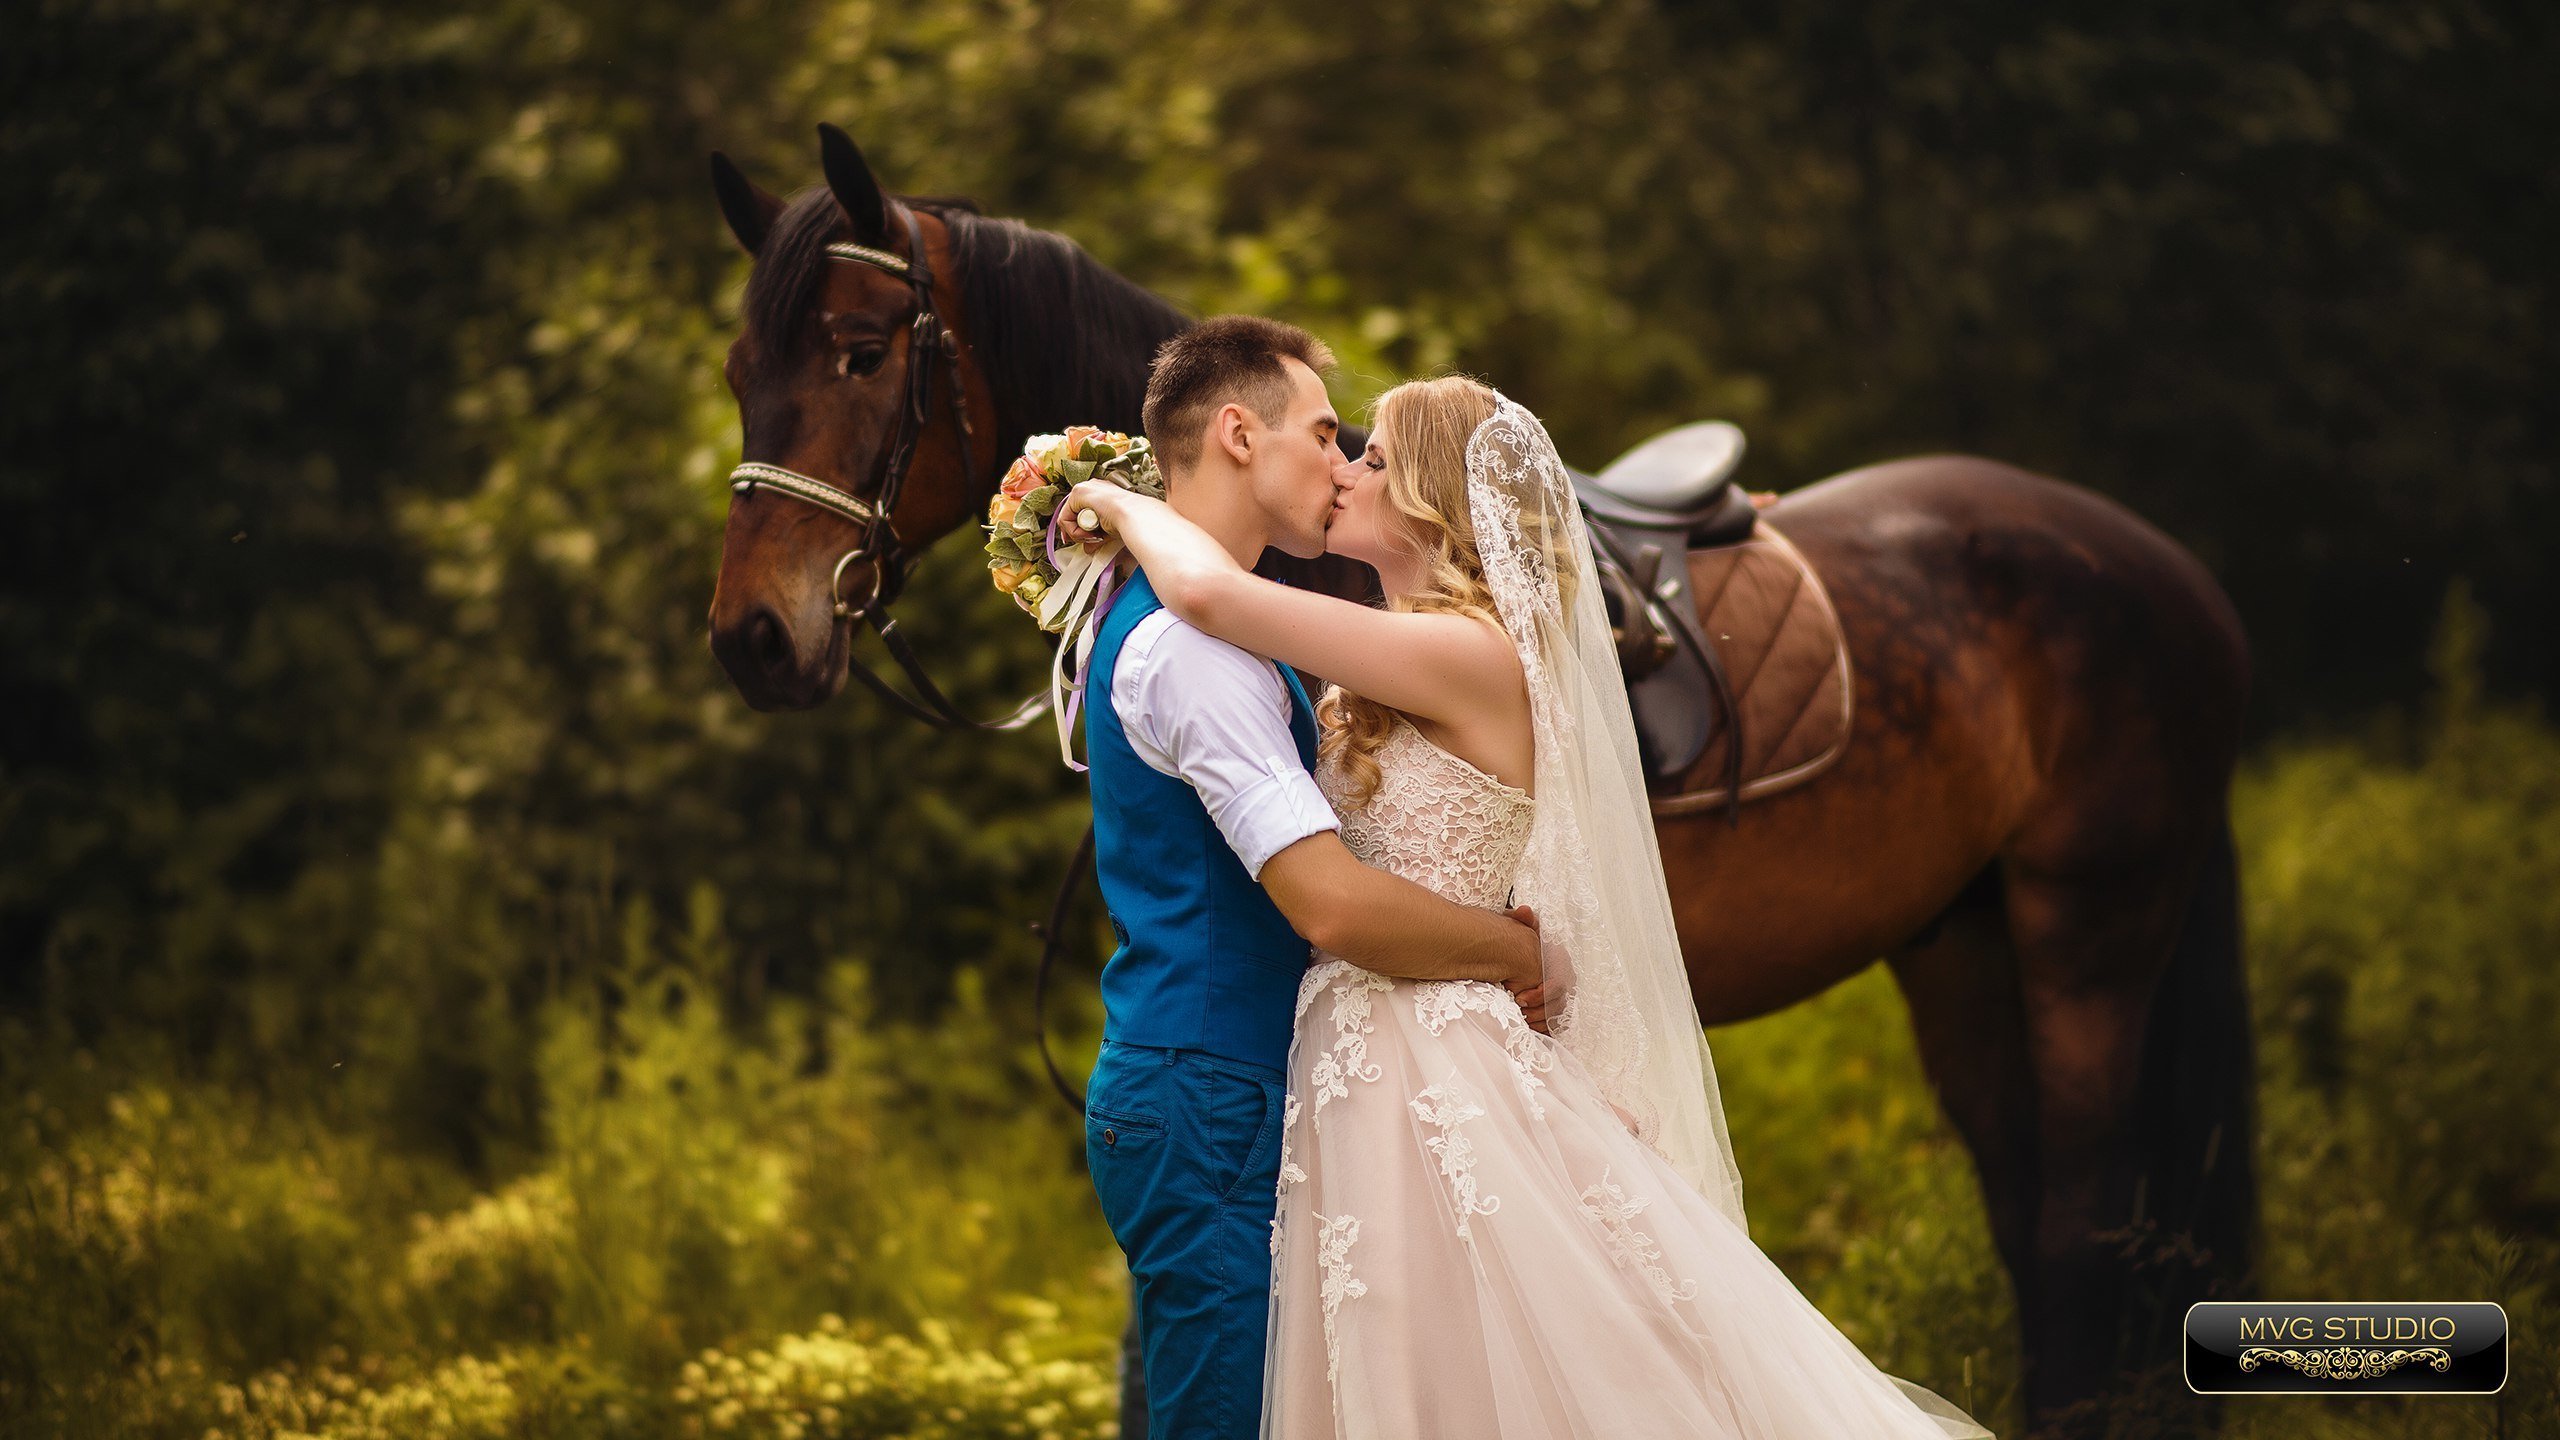 Свадебная фотосессия с лошадьми. Невеста на лошади. Фотосессия свадьба на лошадях. Свадебная фотосессия с лошадьми летом. Конь жених